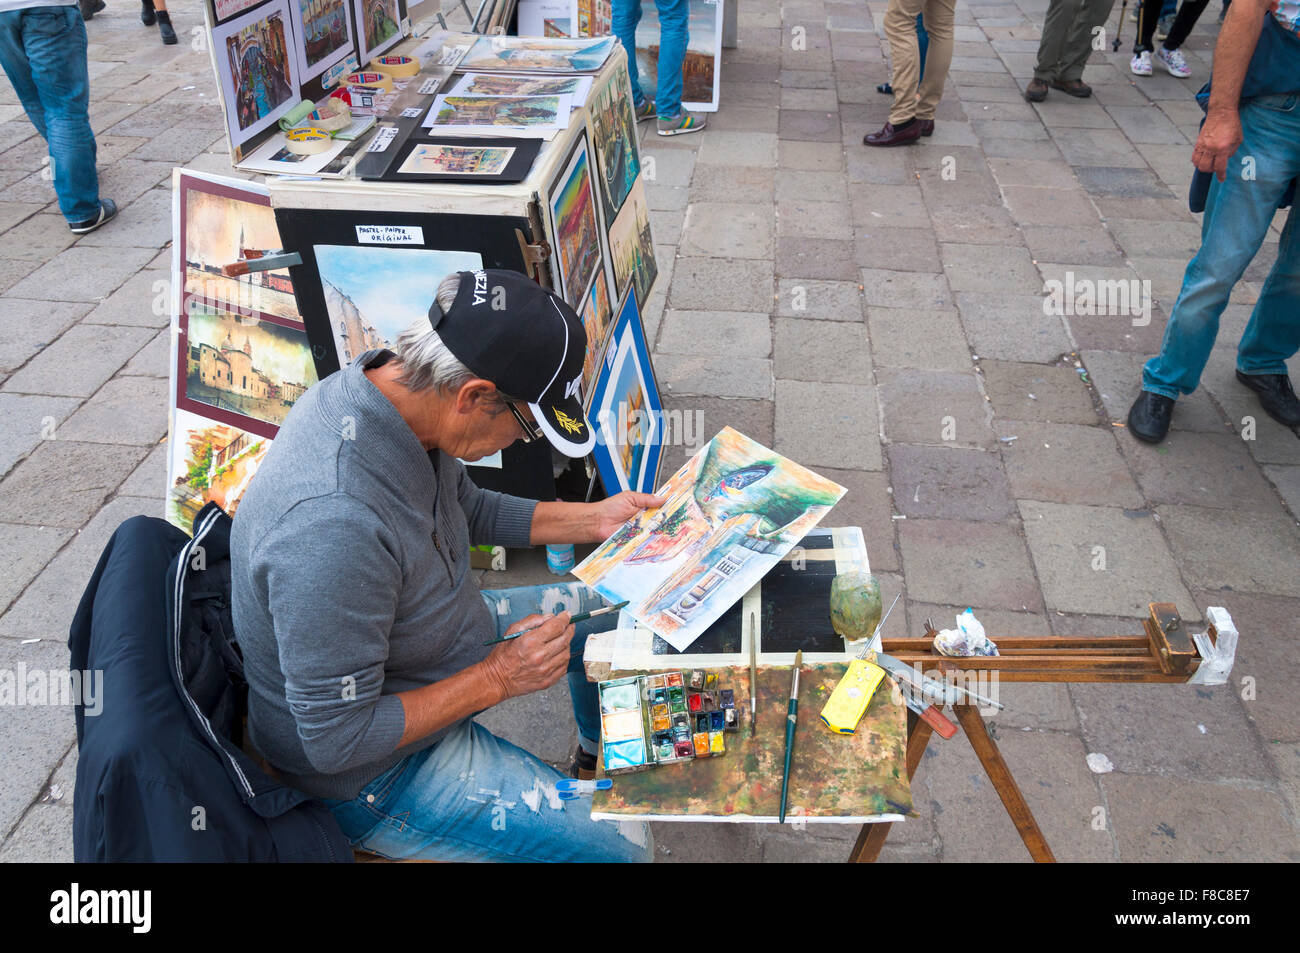 Artista callejero en el trabajo, en la ciudad de Venecia, Italia Foto de stock